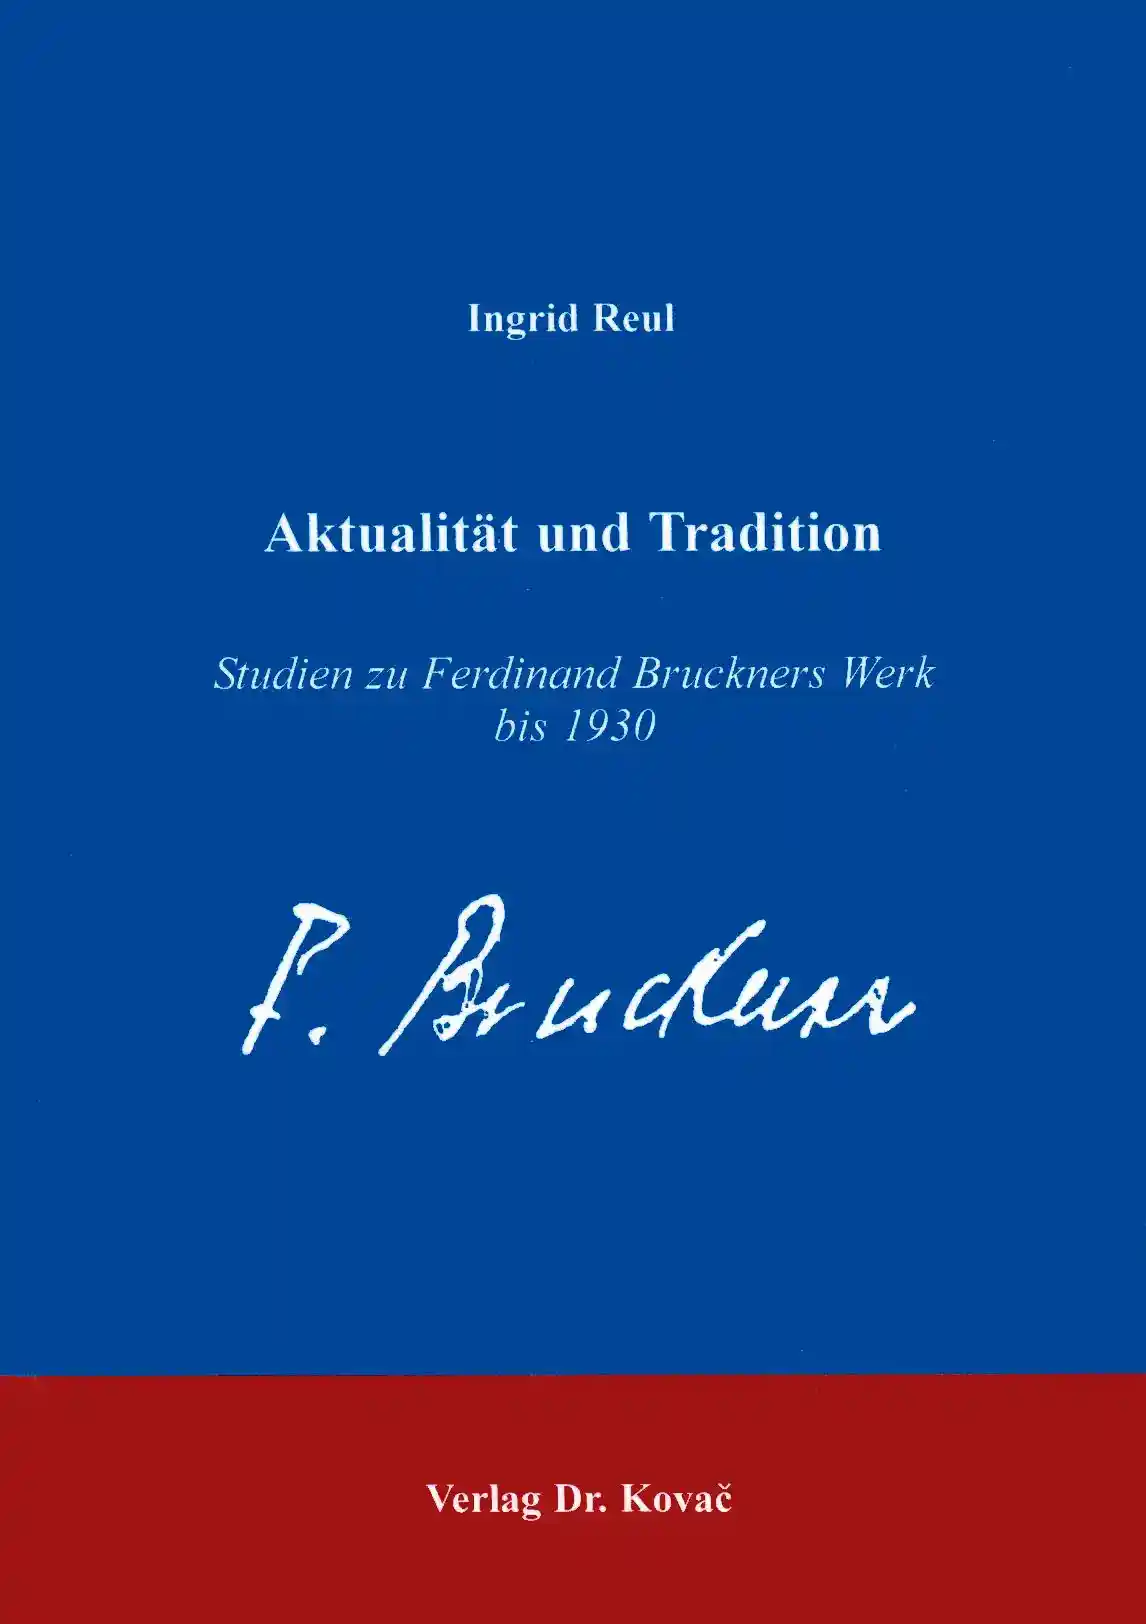 Aktualität und Tradition (Forschungsarbeit)